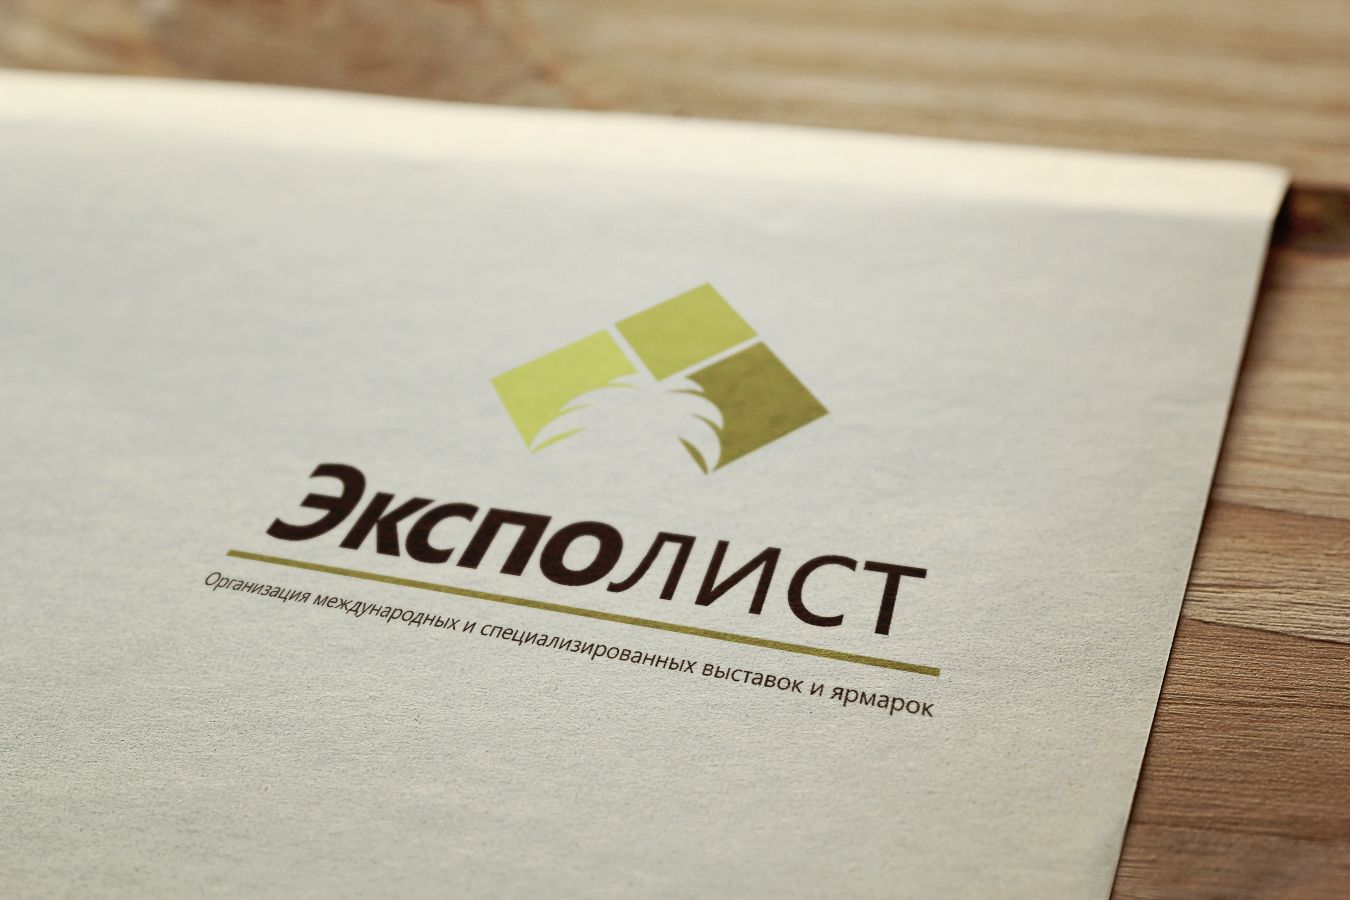 Логотип выставочной компании Эксполист - дизайнер Lepata